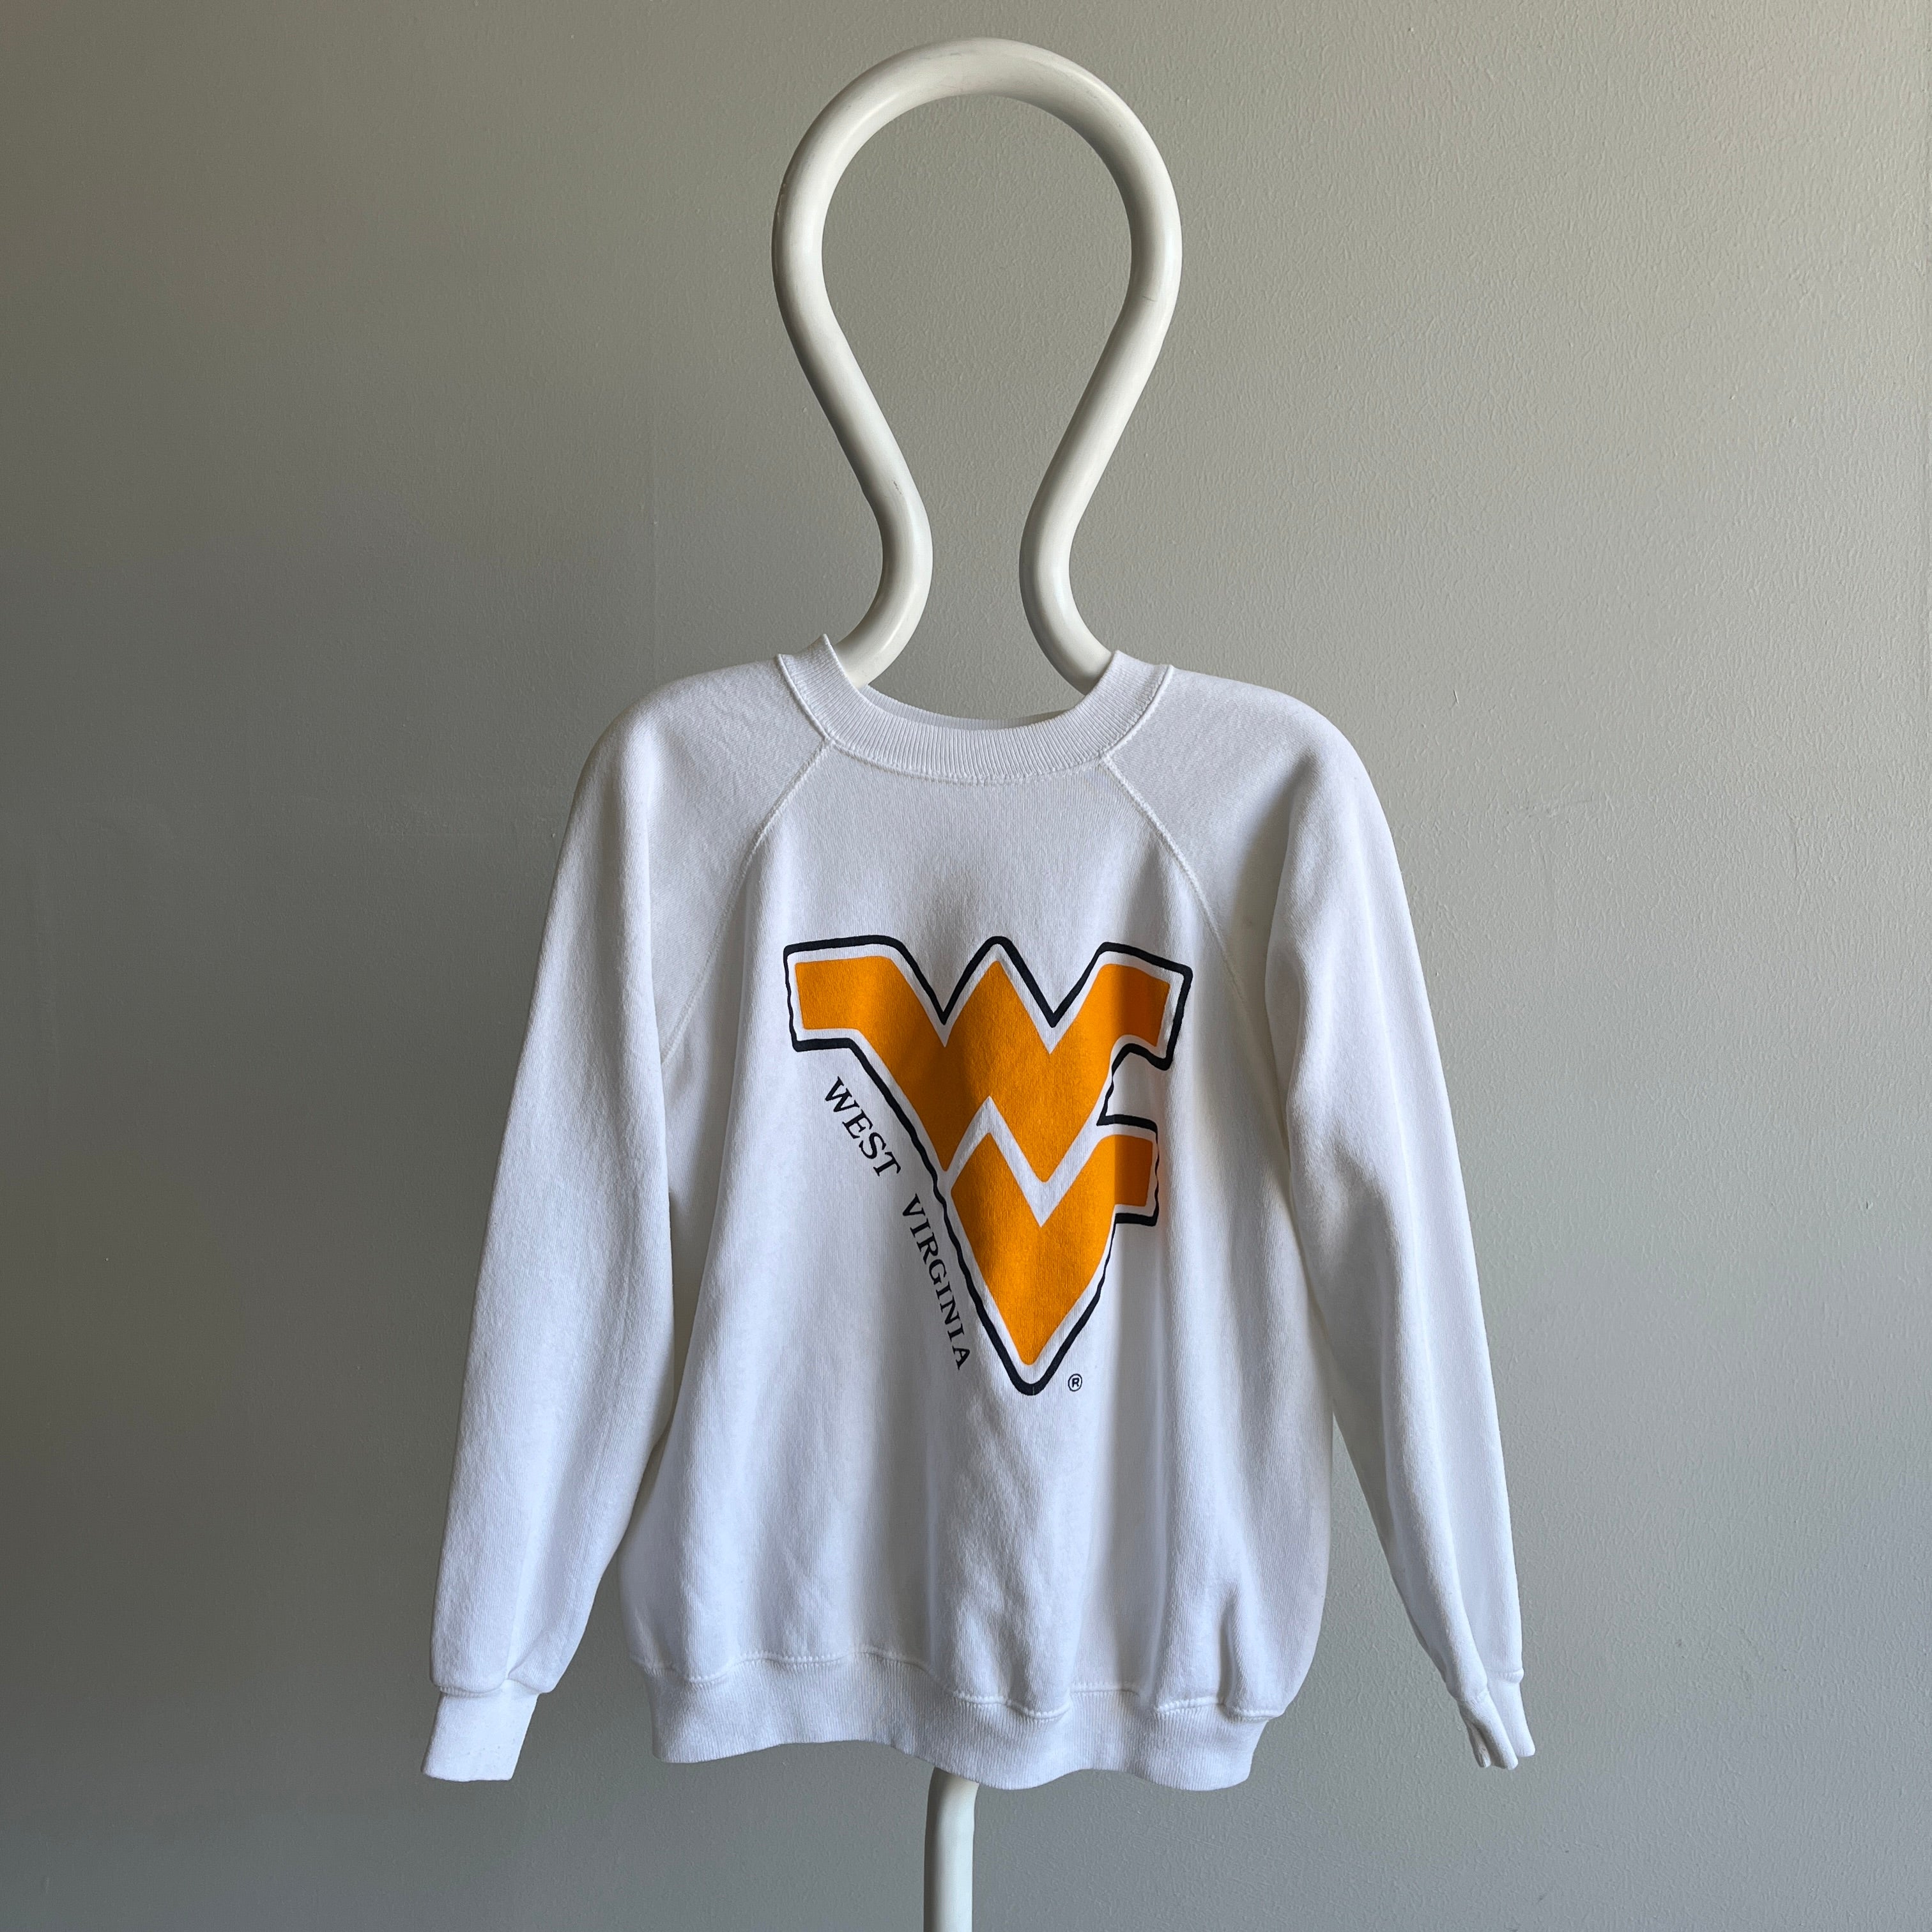 1980s West Virginia Sweatshirt